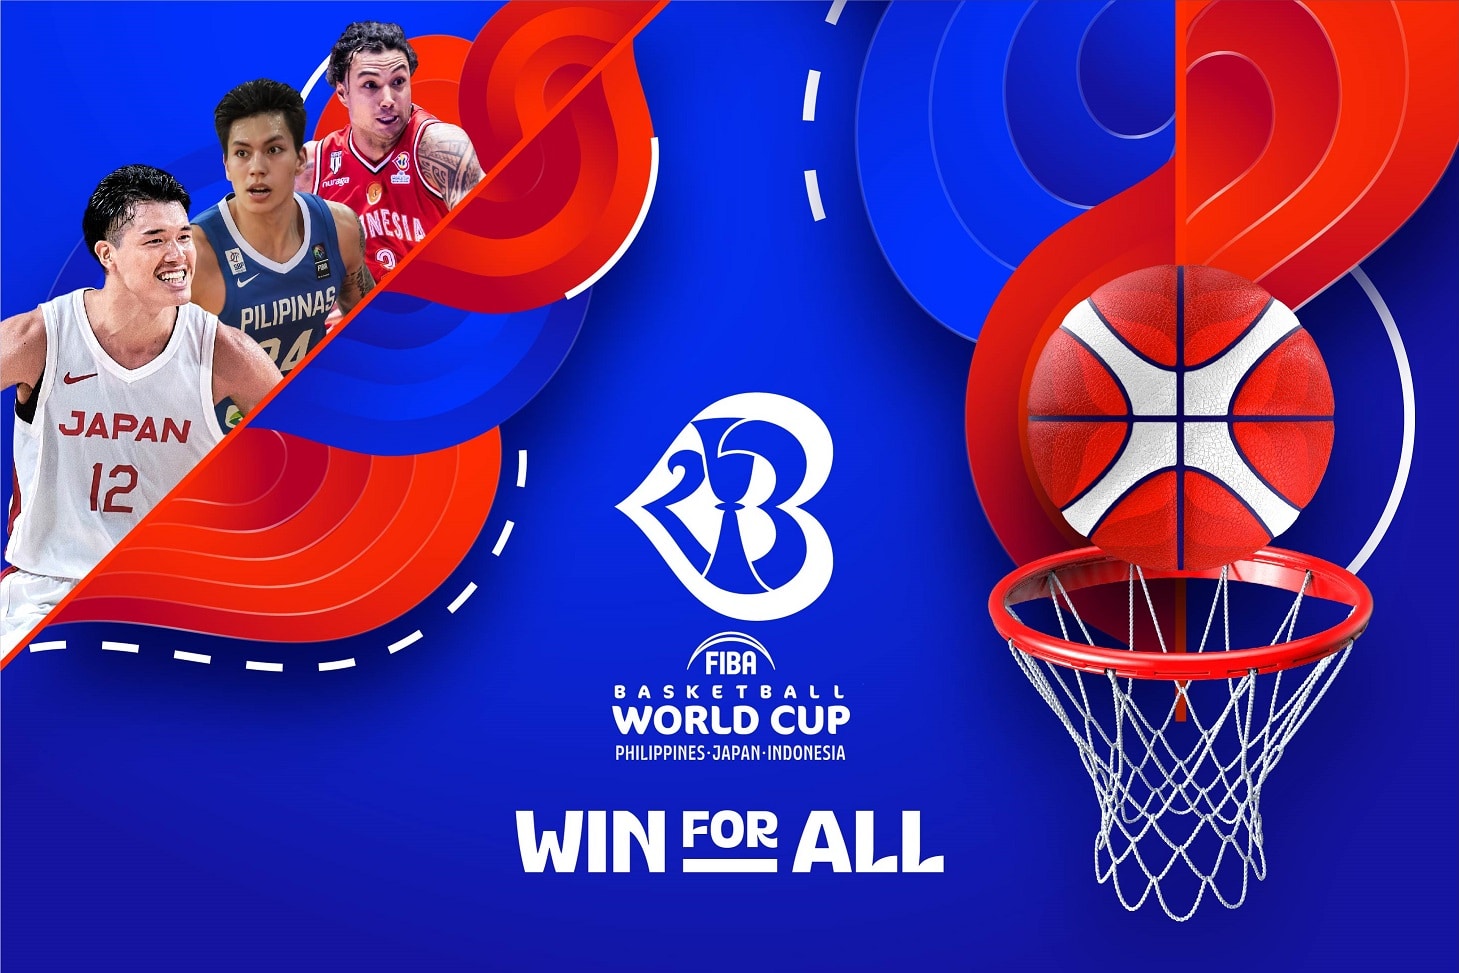 FIBA Basketball World Cup 2023 IMG  スポーツ、イベント、メディア、ファッション分野のグローバル・リーディングカンパニー